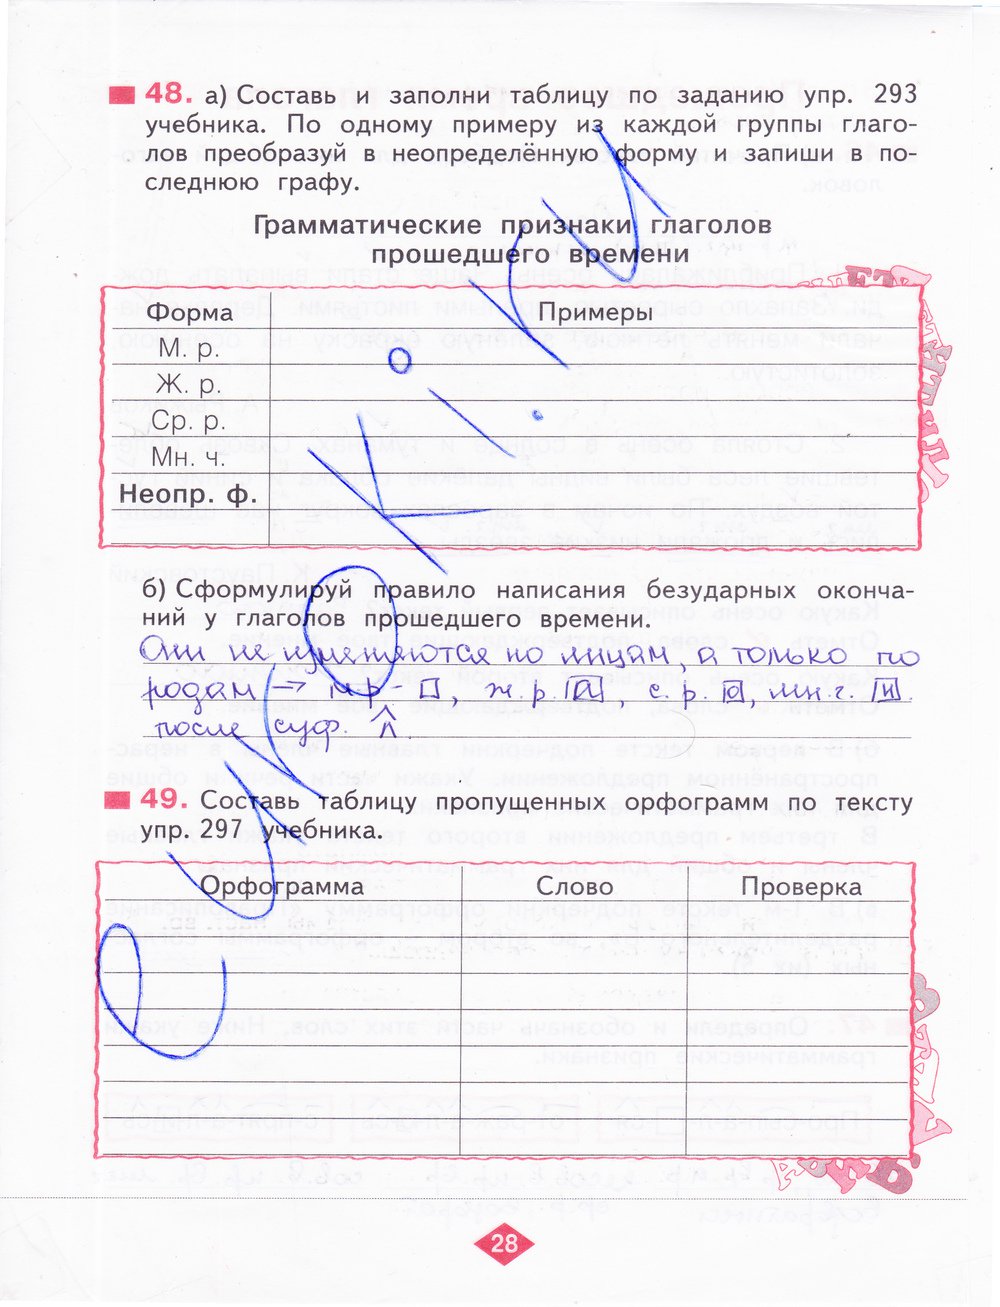 гдз 4 класс рабочая тетрадь часть 2 страница 28 русский язык Нечаева, Воскресенская